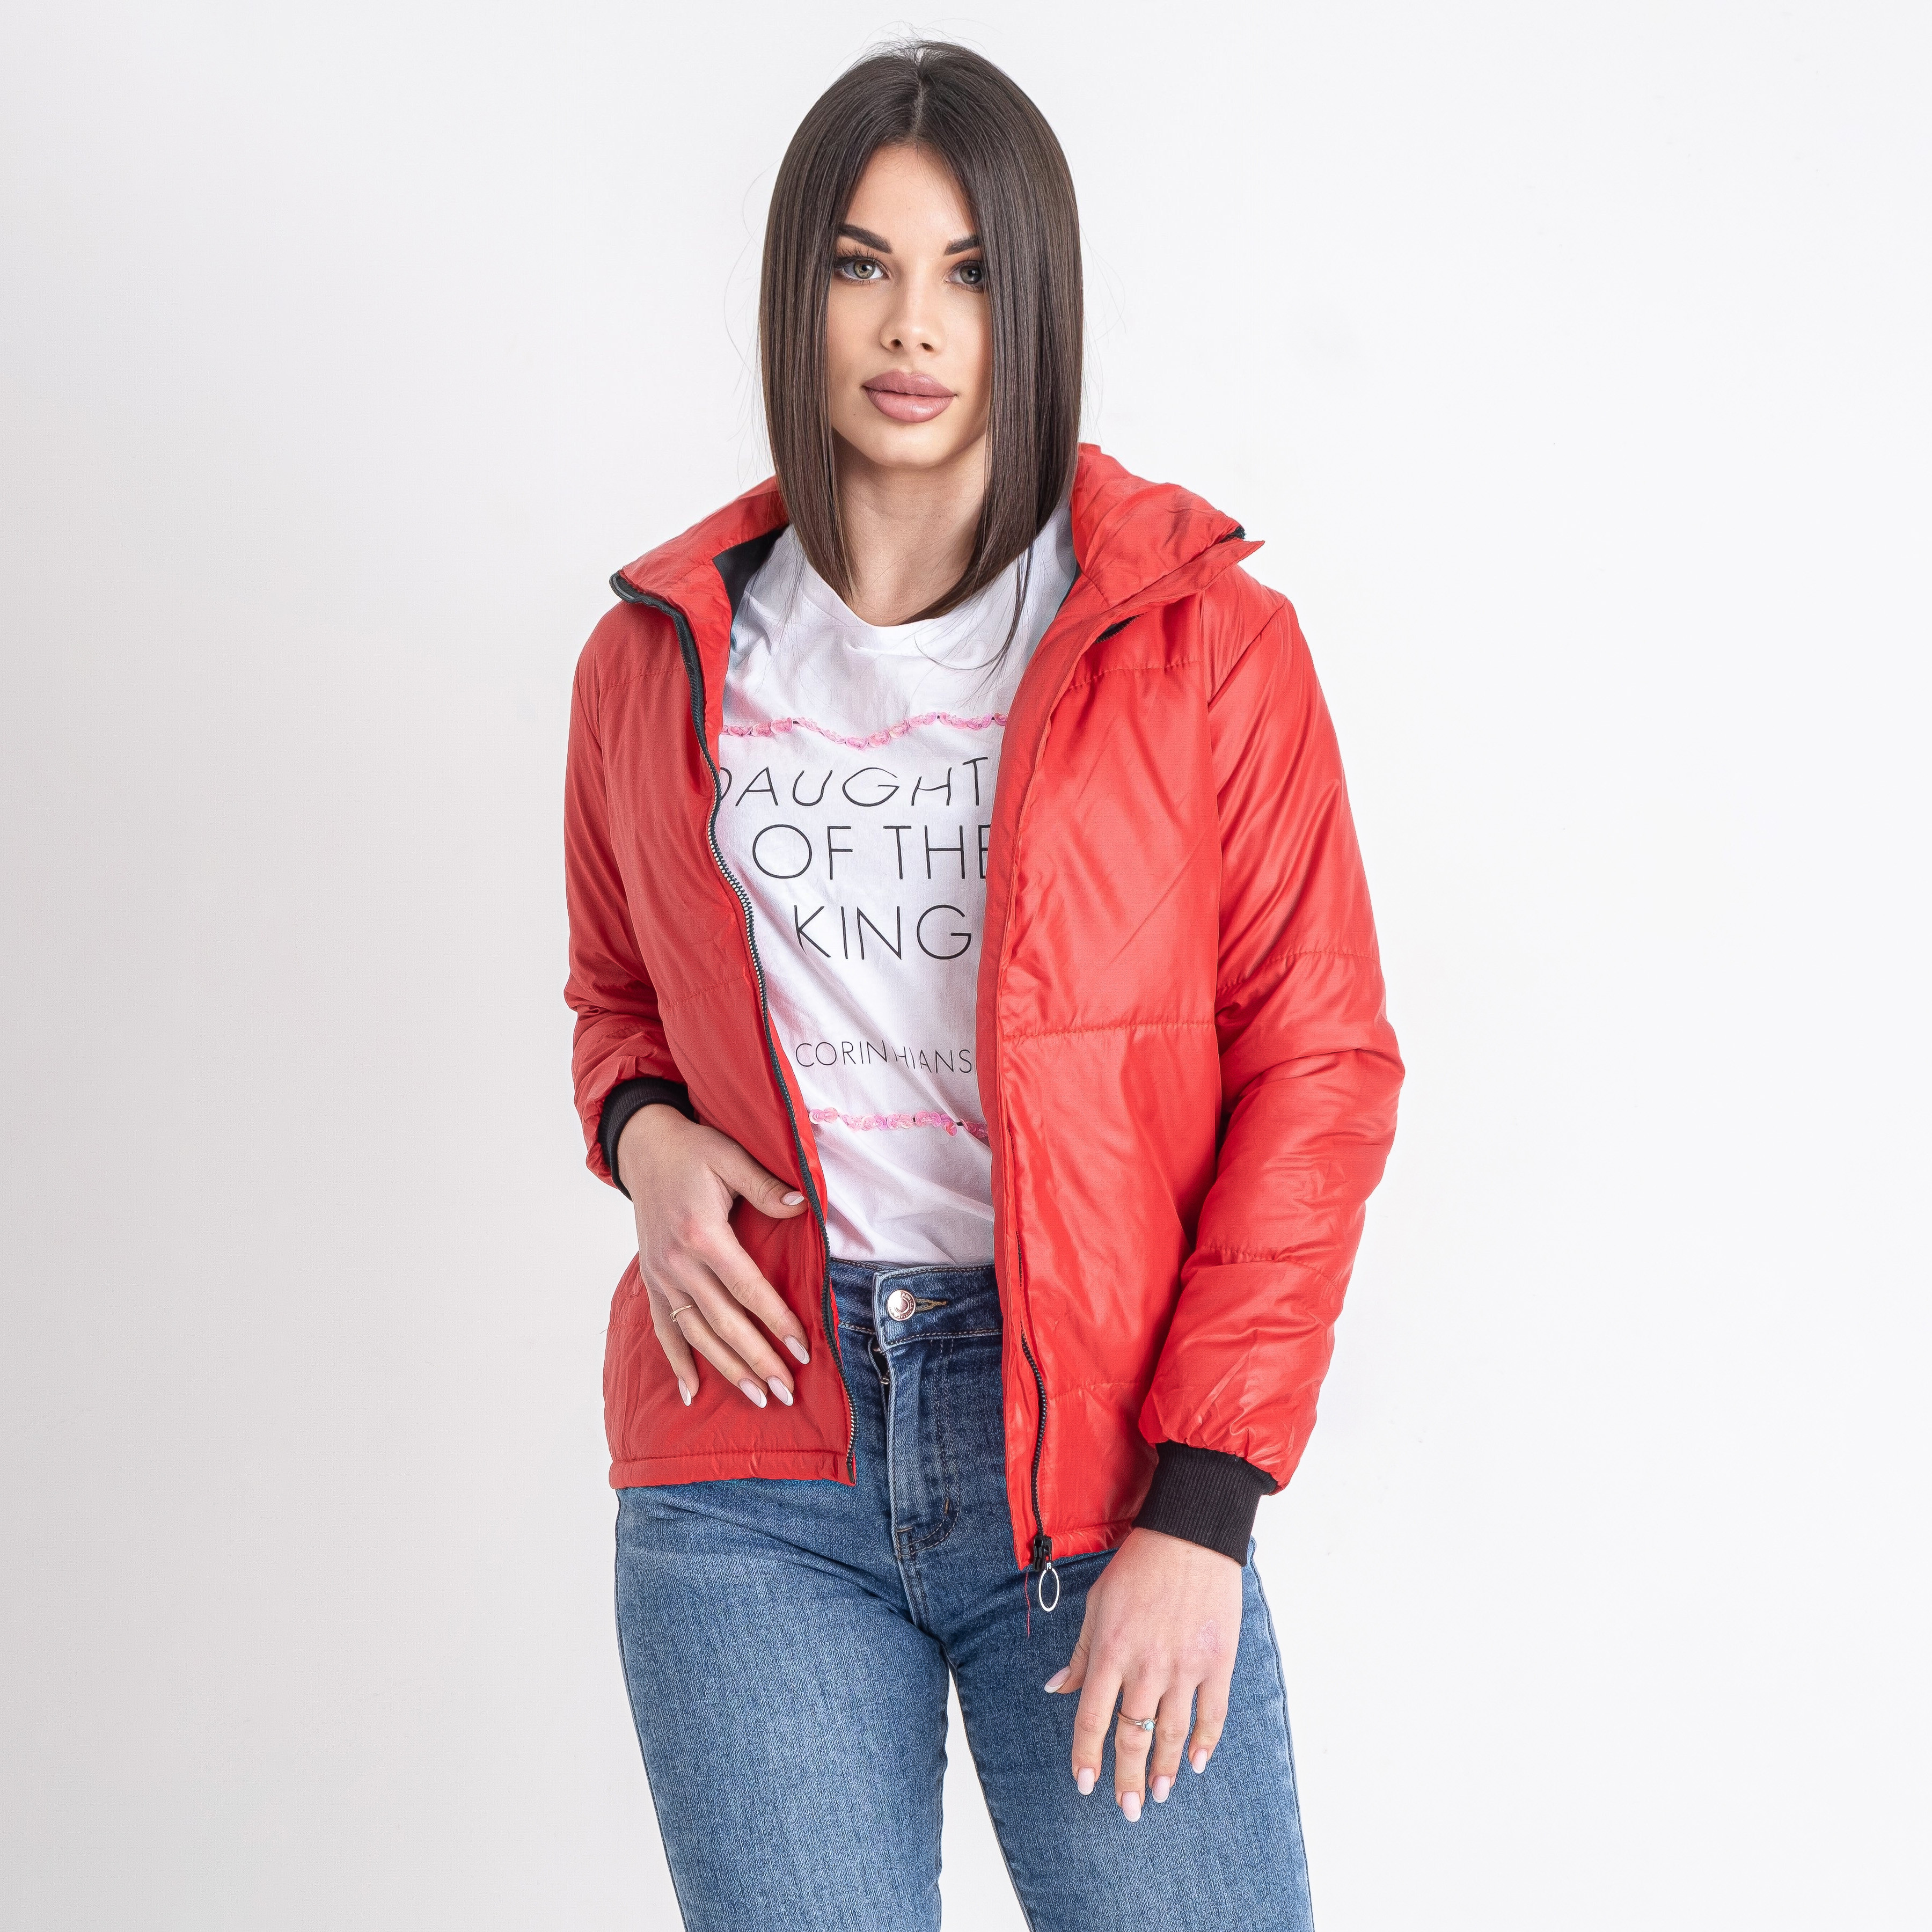 42352-5 красная женская куртка-зефирка (синтепон, 5 ед. размеры норма: 40-46, повторяются)